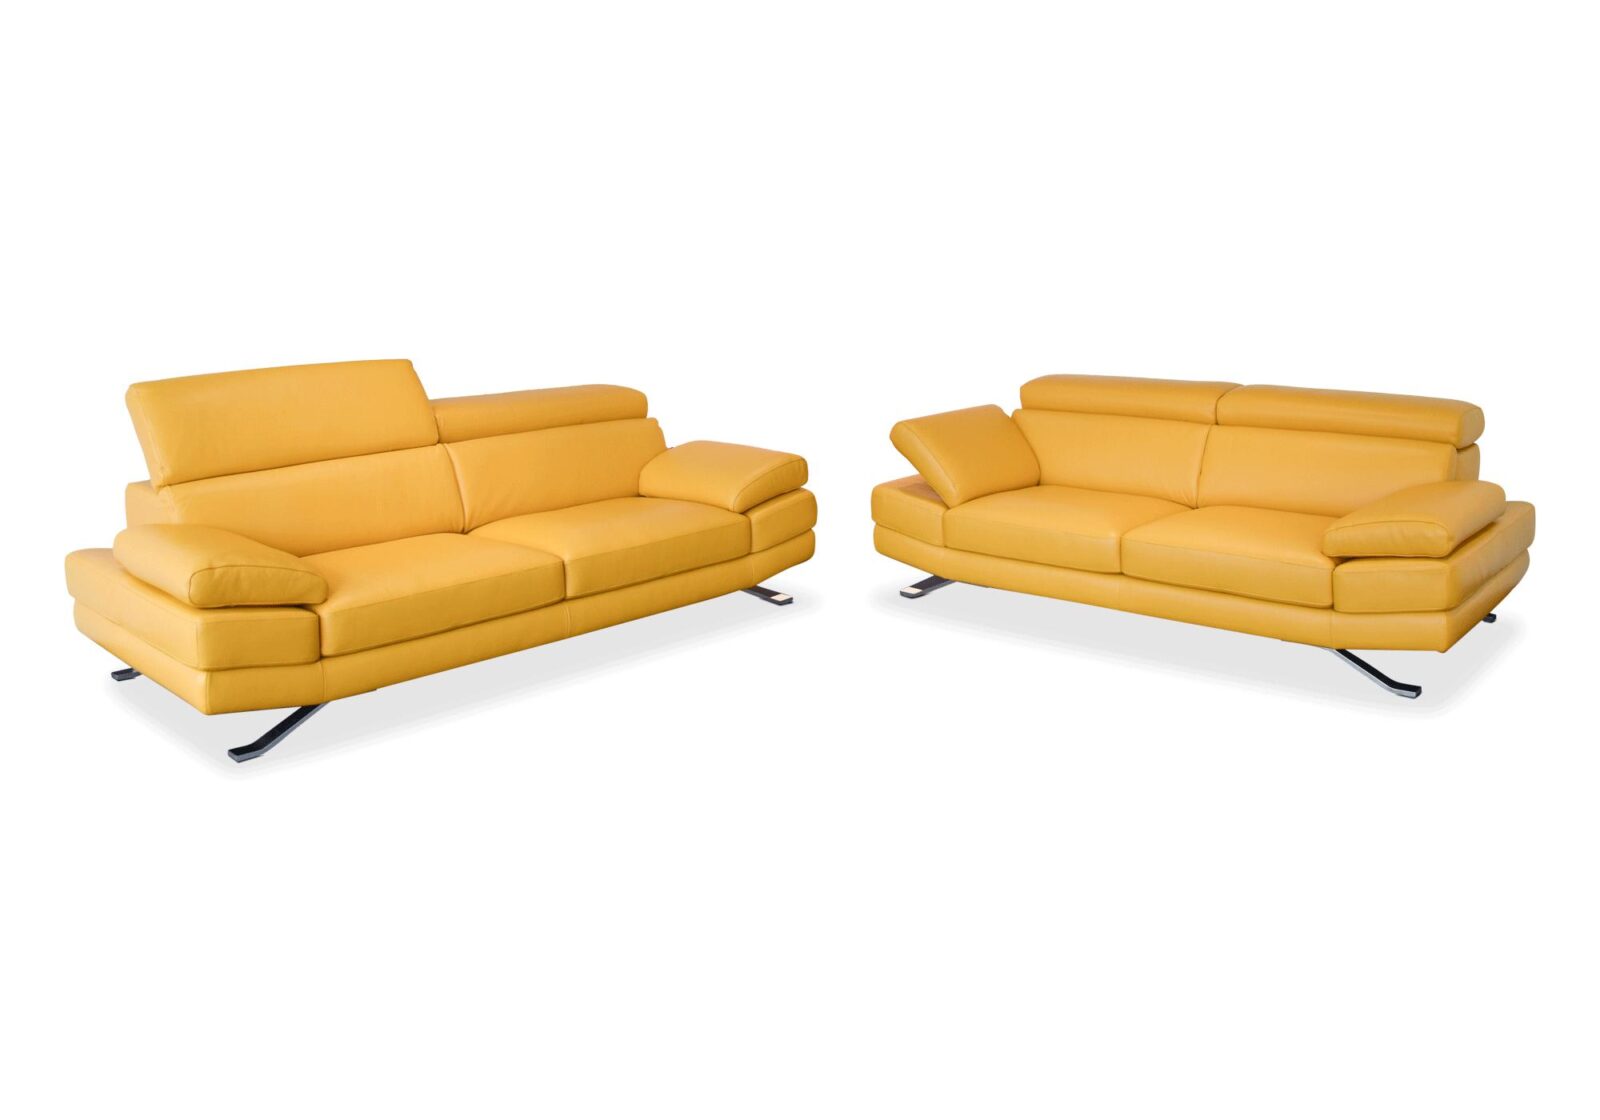 Polstergruppe Sam mit 2er und 3er Sofa. Bezug: Leder. Farbe: Gelb. Erhältlich bei Möbel Gallati.